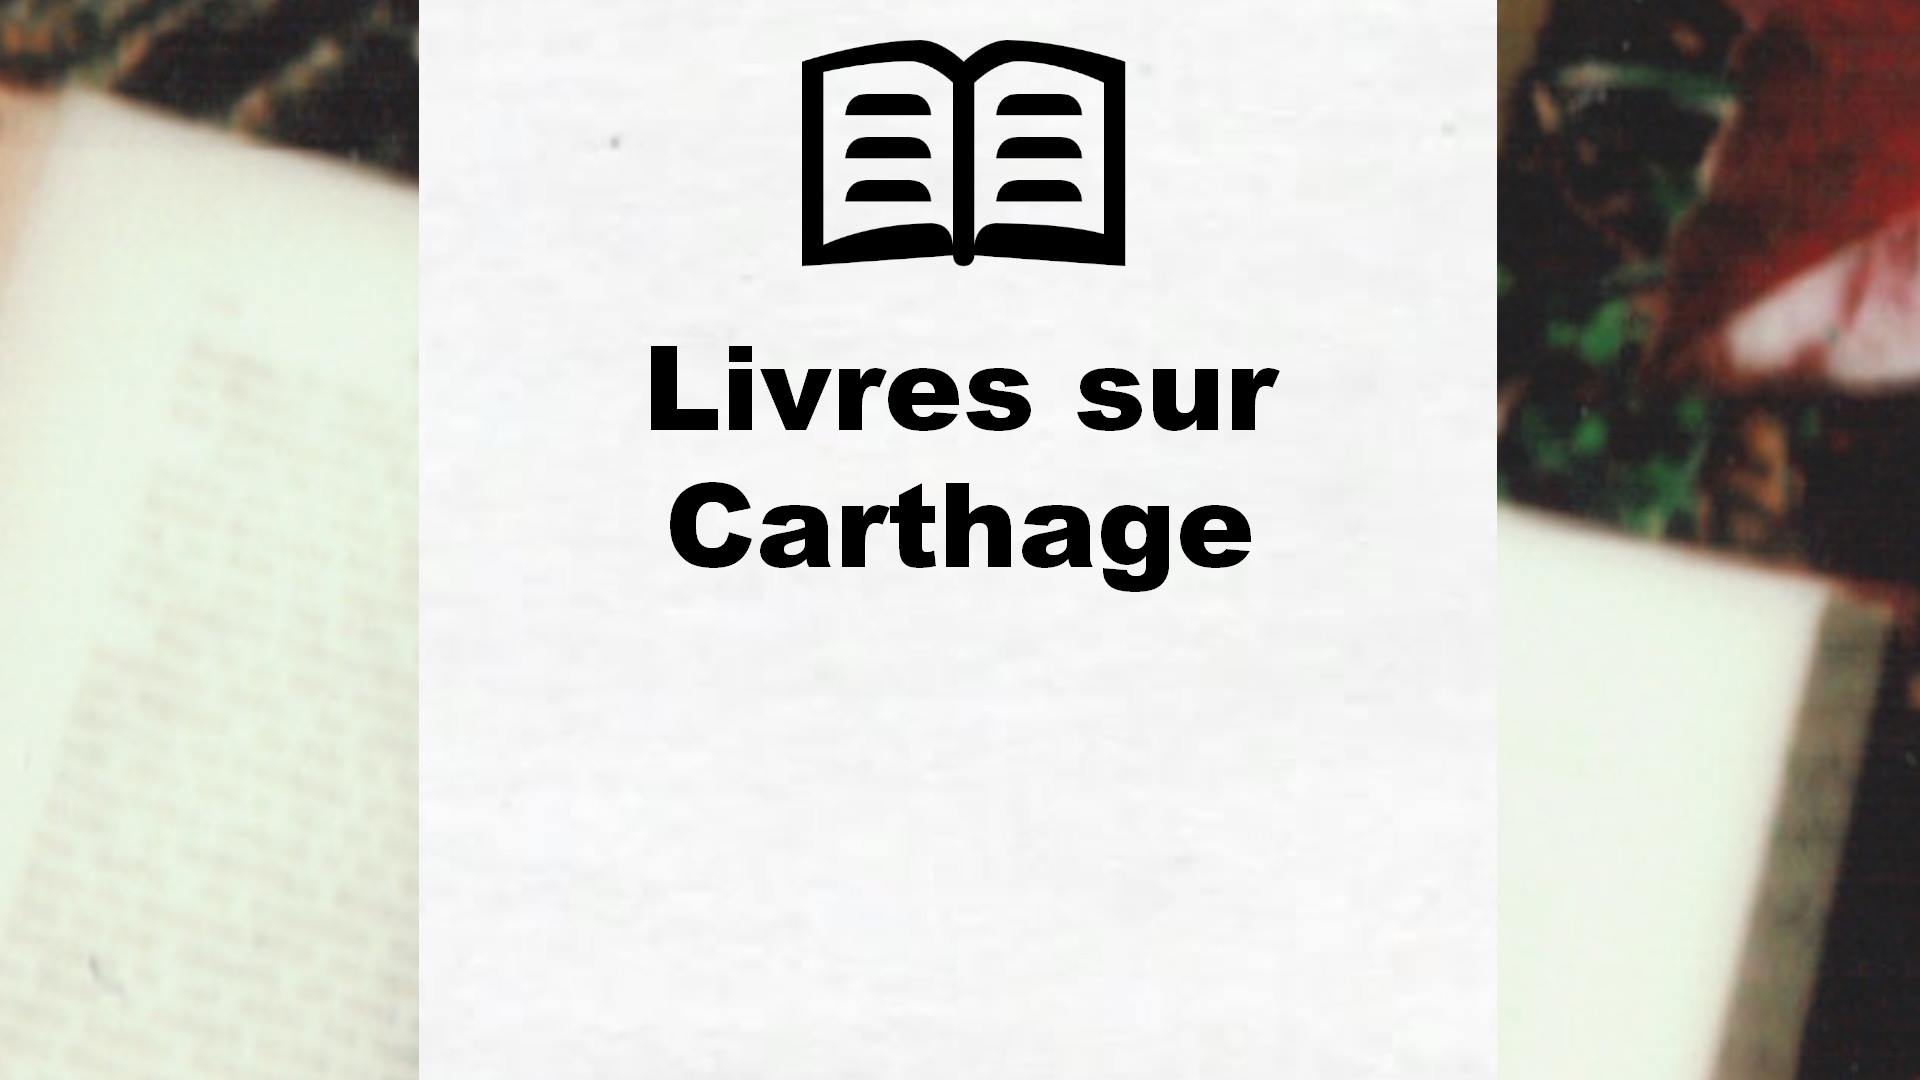 Livres sur Carthage